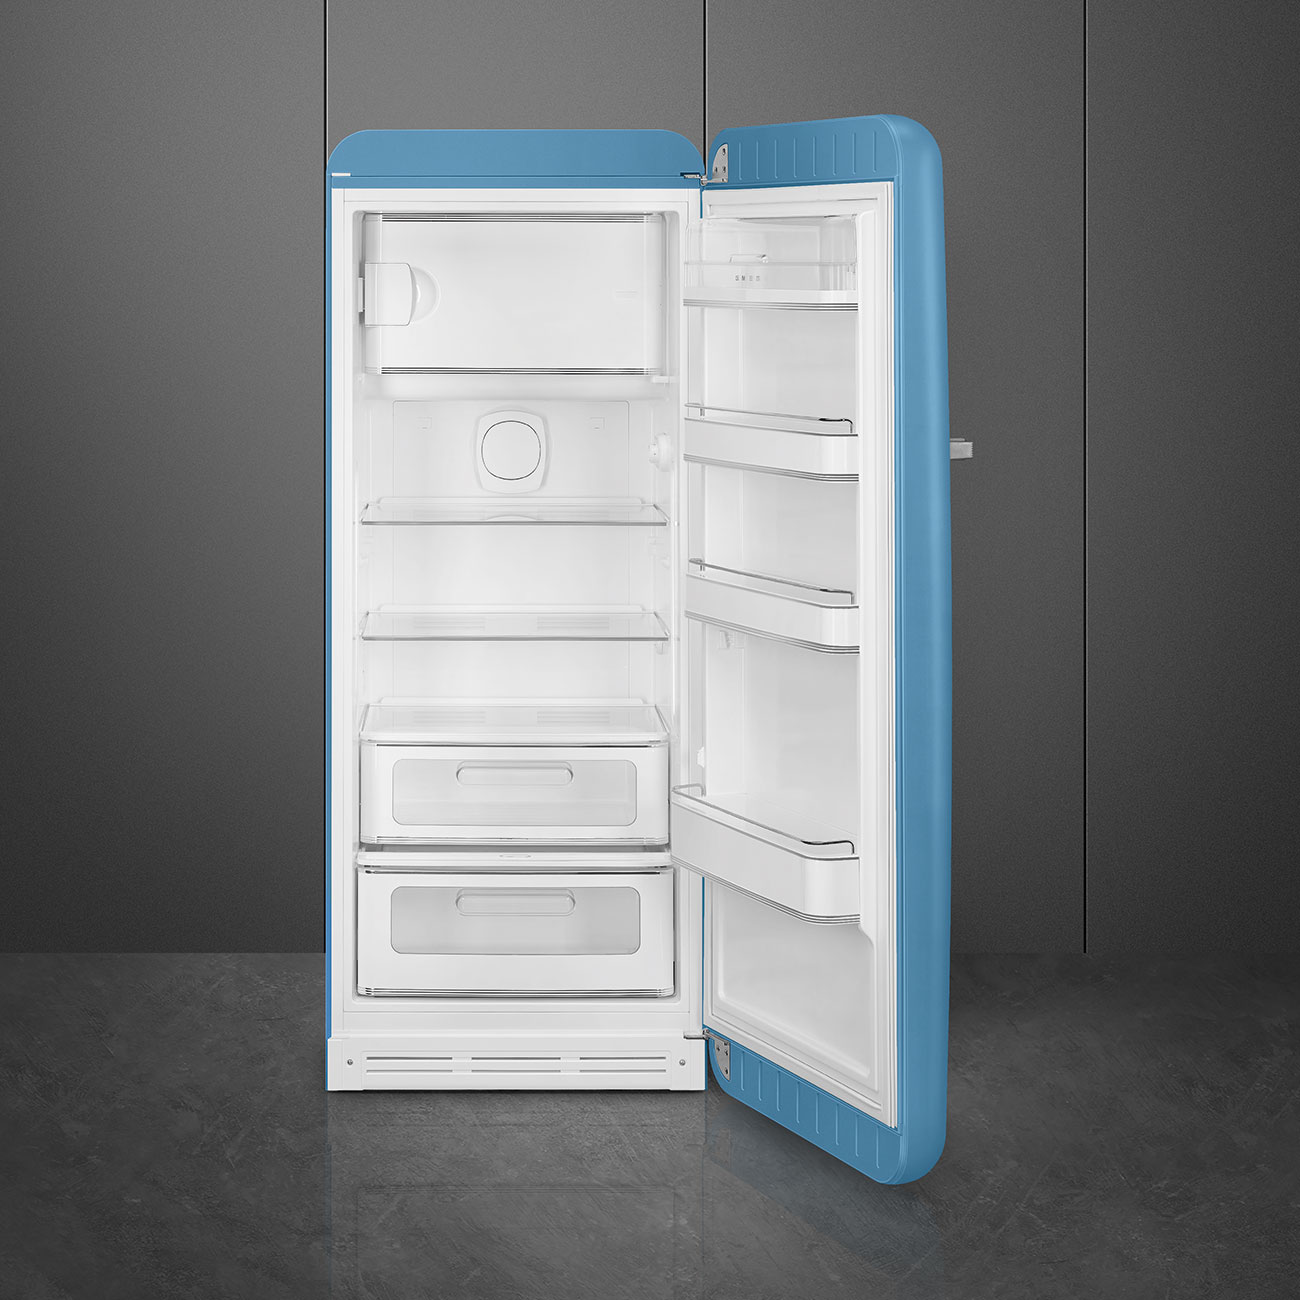 Light Blue refrigerator - Smeg_4